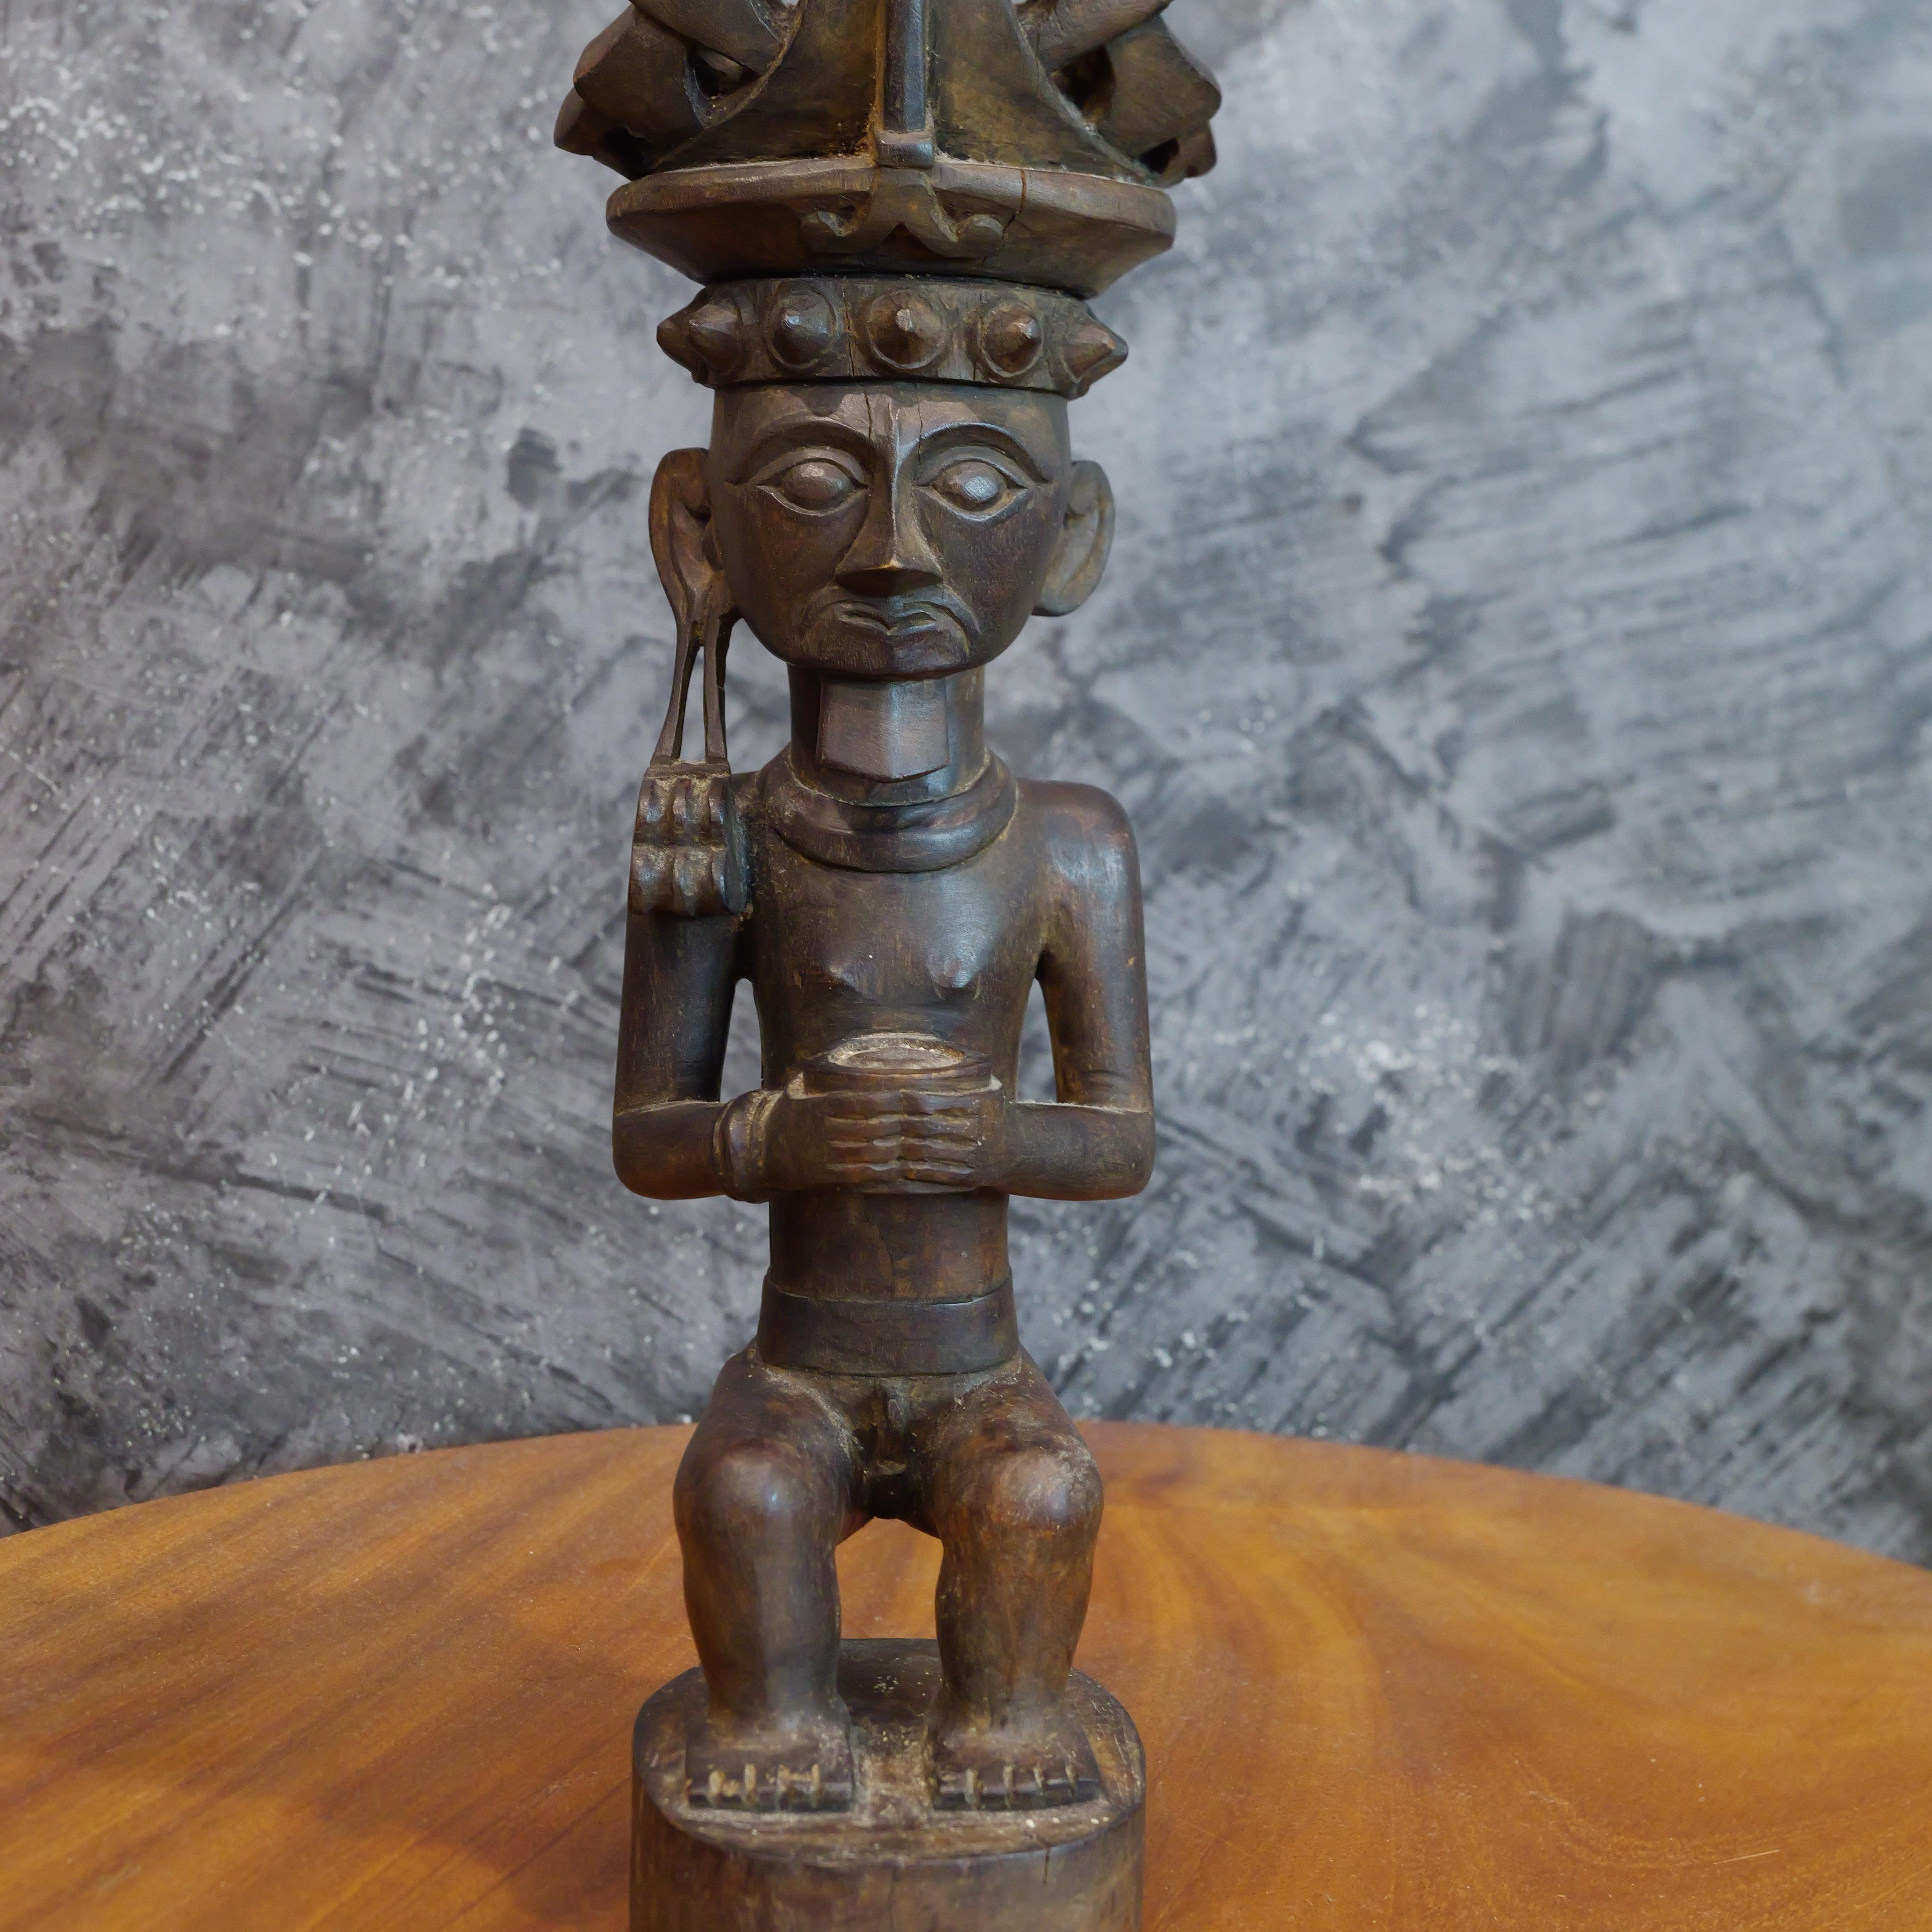 Diese Holzstatue von Siraha Salawa, einer edlen Ahnenfigur aus Nias in Indonesien, ist ein eindrucksvolles Beispiel für die Kunstfertigkeit und das kulturelle Erbe von Nias. Aus einem einzigen Stück Holz geschnitzt, steht diese Statue hoch und stolz